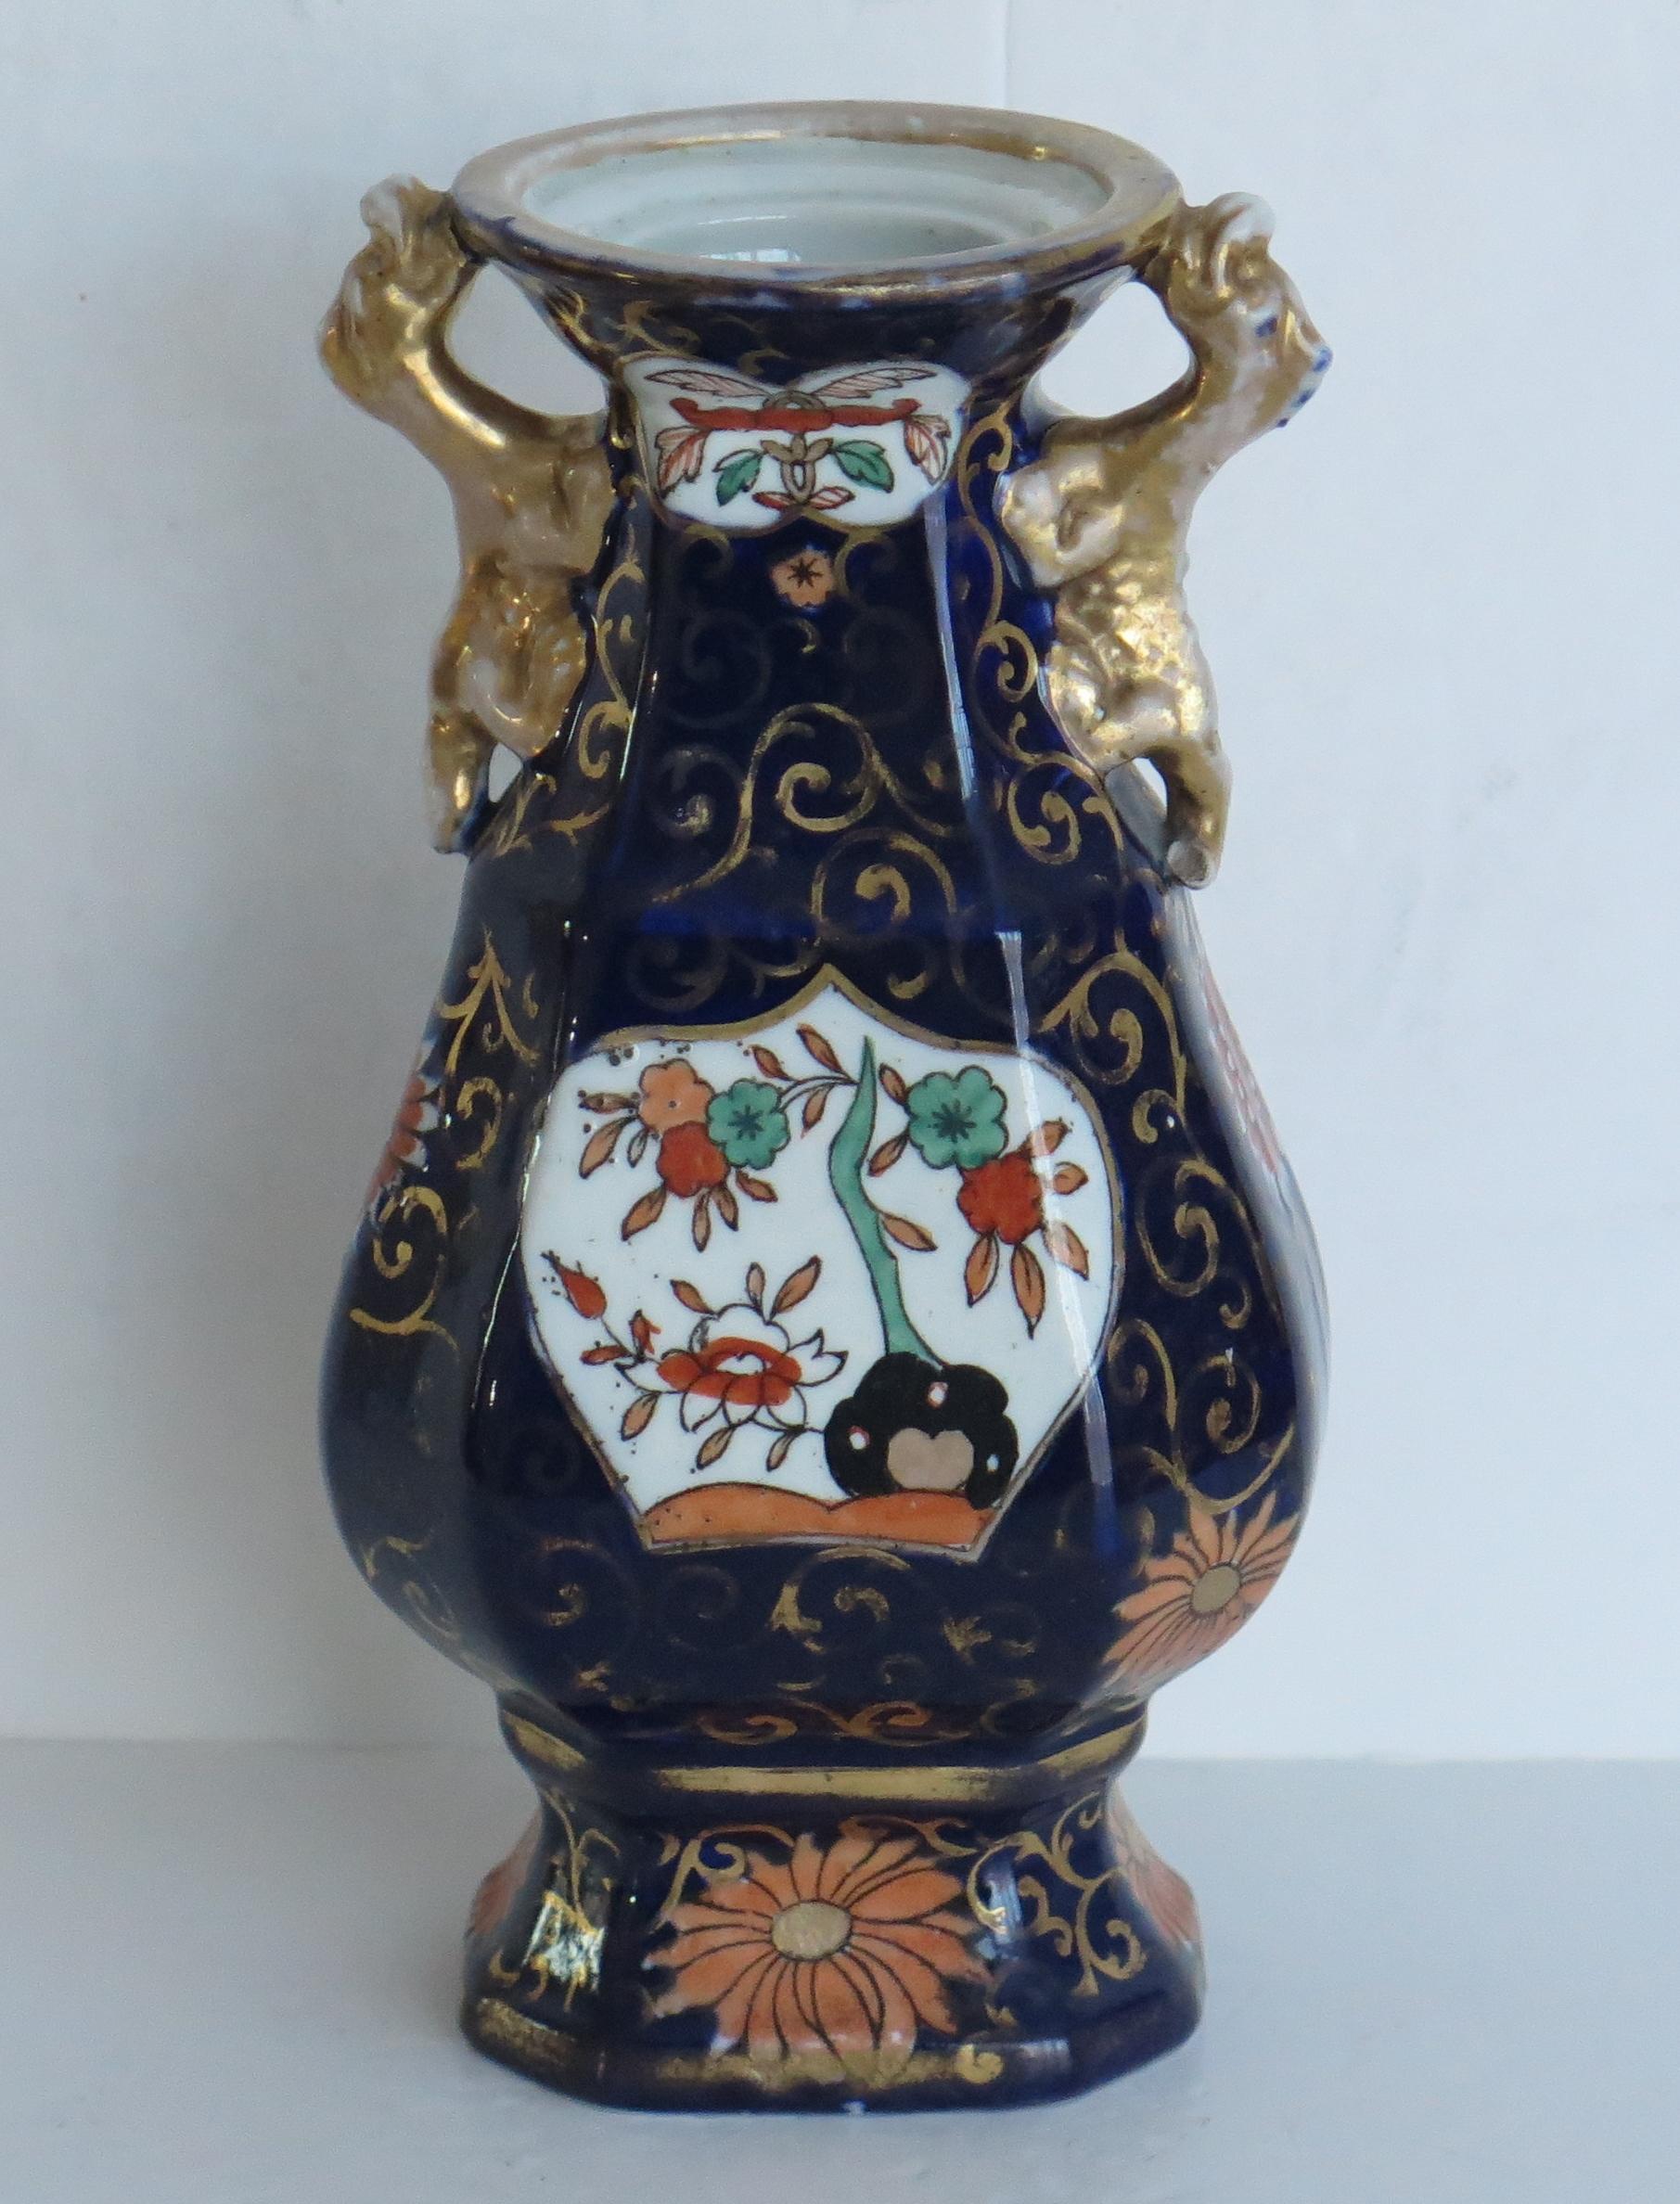 Es handelt sich um eine Vase aus Eisenstein mit dem blauen Hawthorne- und Zaun- und Schalenmuster, hergestellt von Mason's Ironstone of Lane Delph, Staffordshire, England, in der ersten Hälfte des 19. Jahrhunderts, ca. 1825-1835.

Die Vase hat